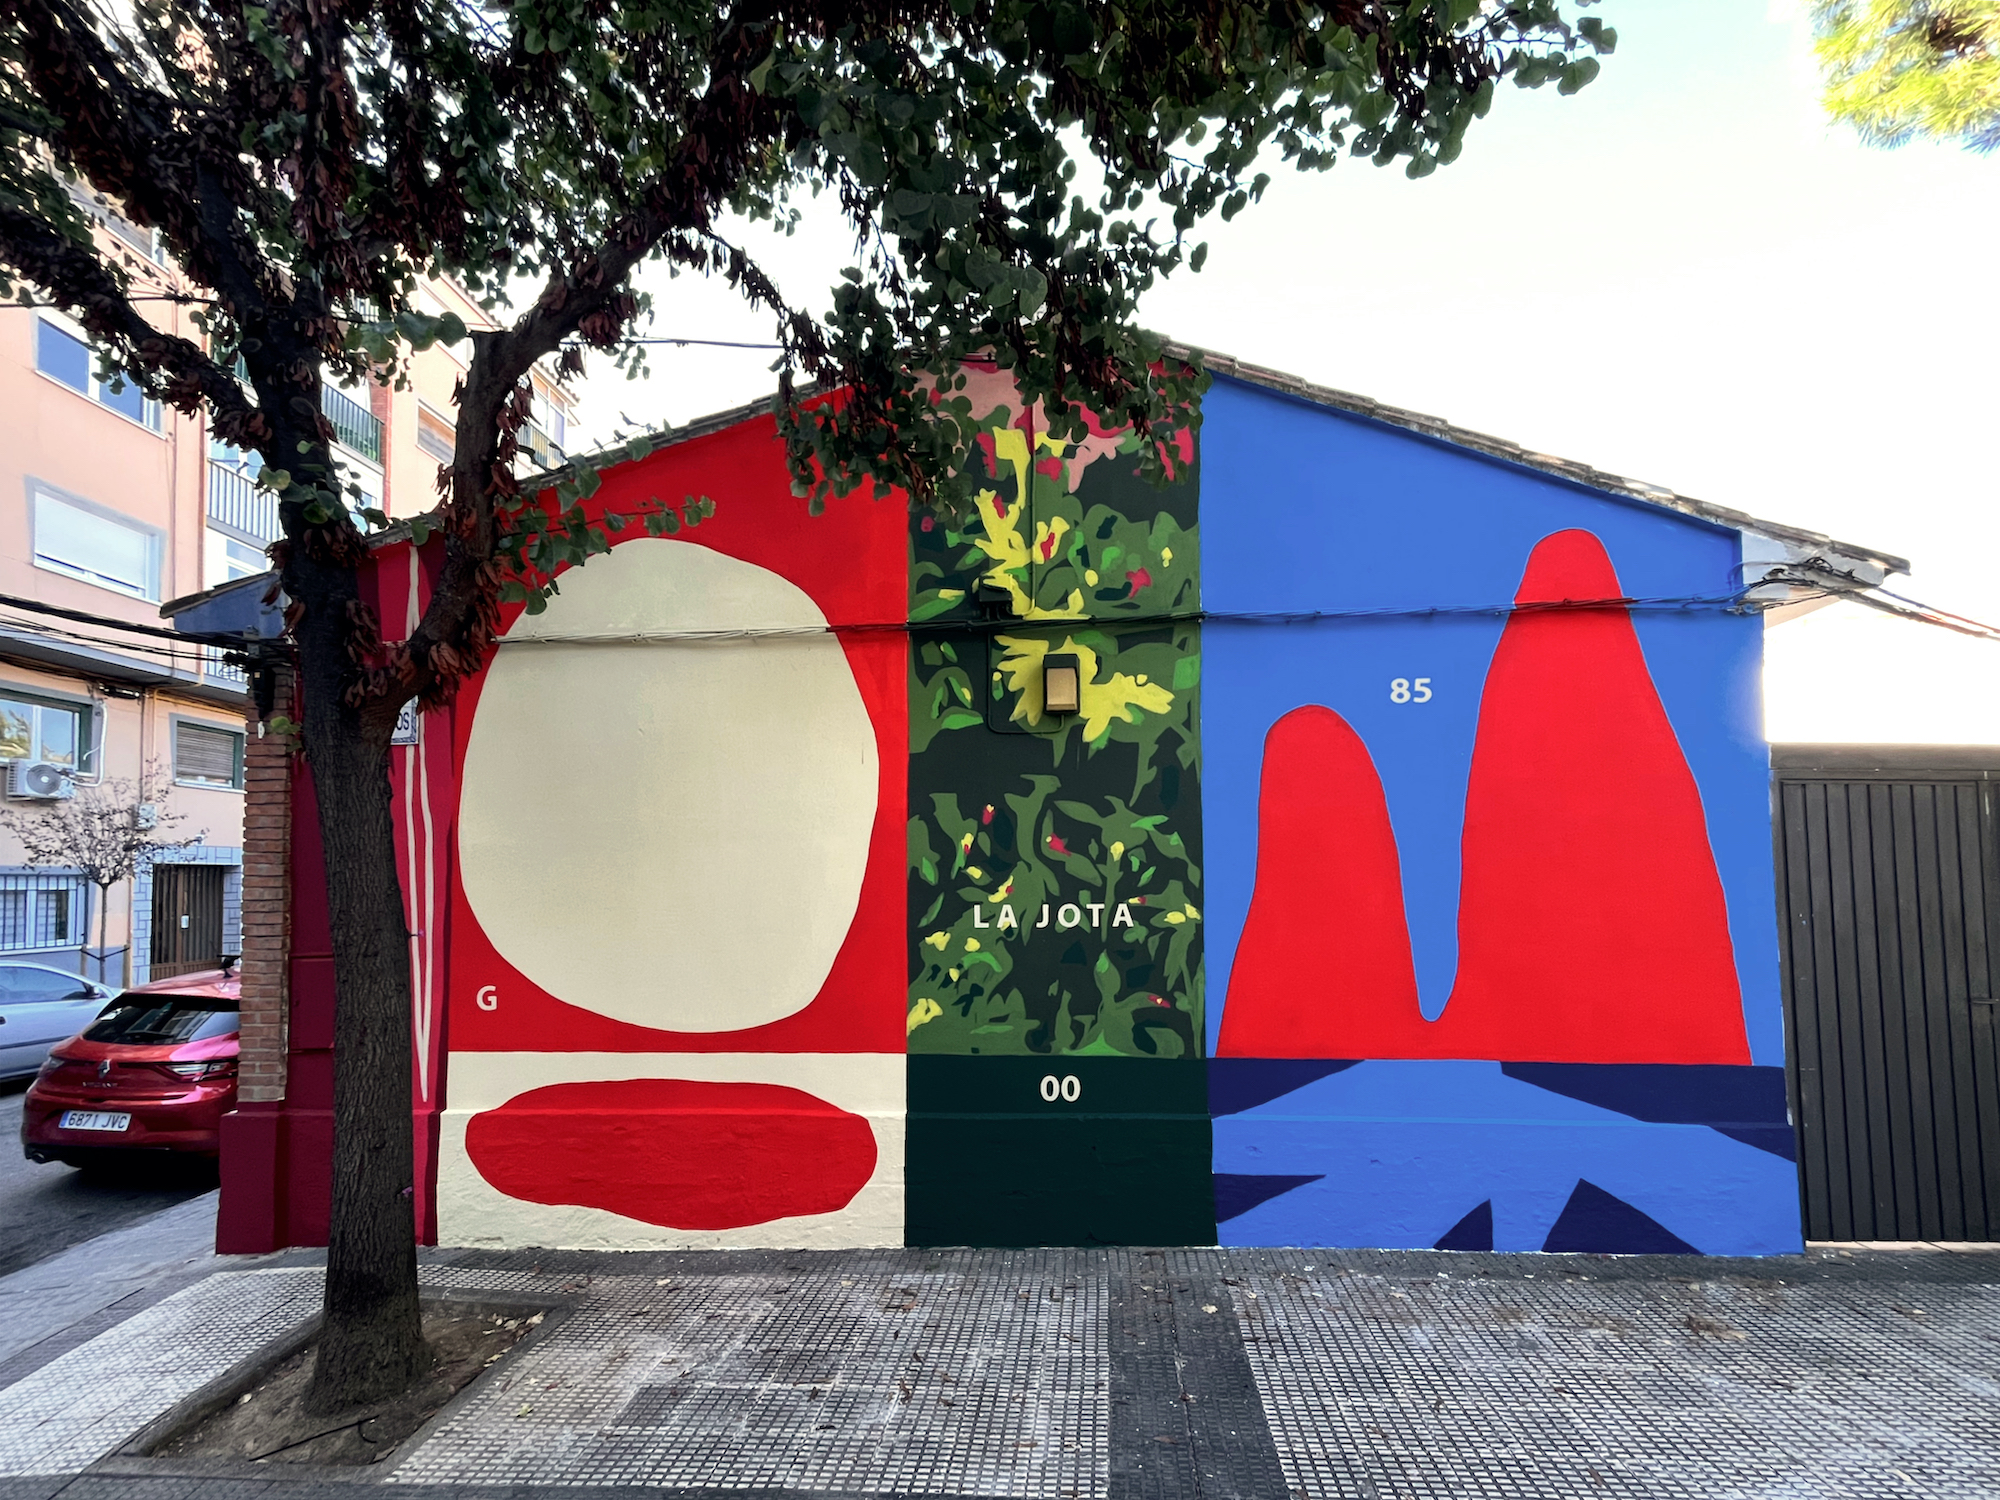 Городские граффити  “LA JOTA”от Джулио Весприни в Сарагосе, Испания